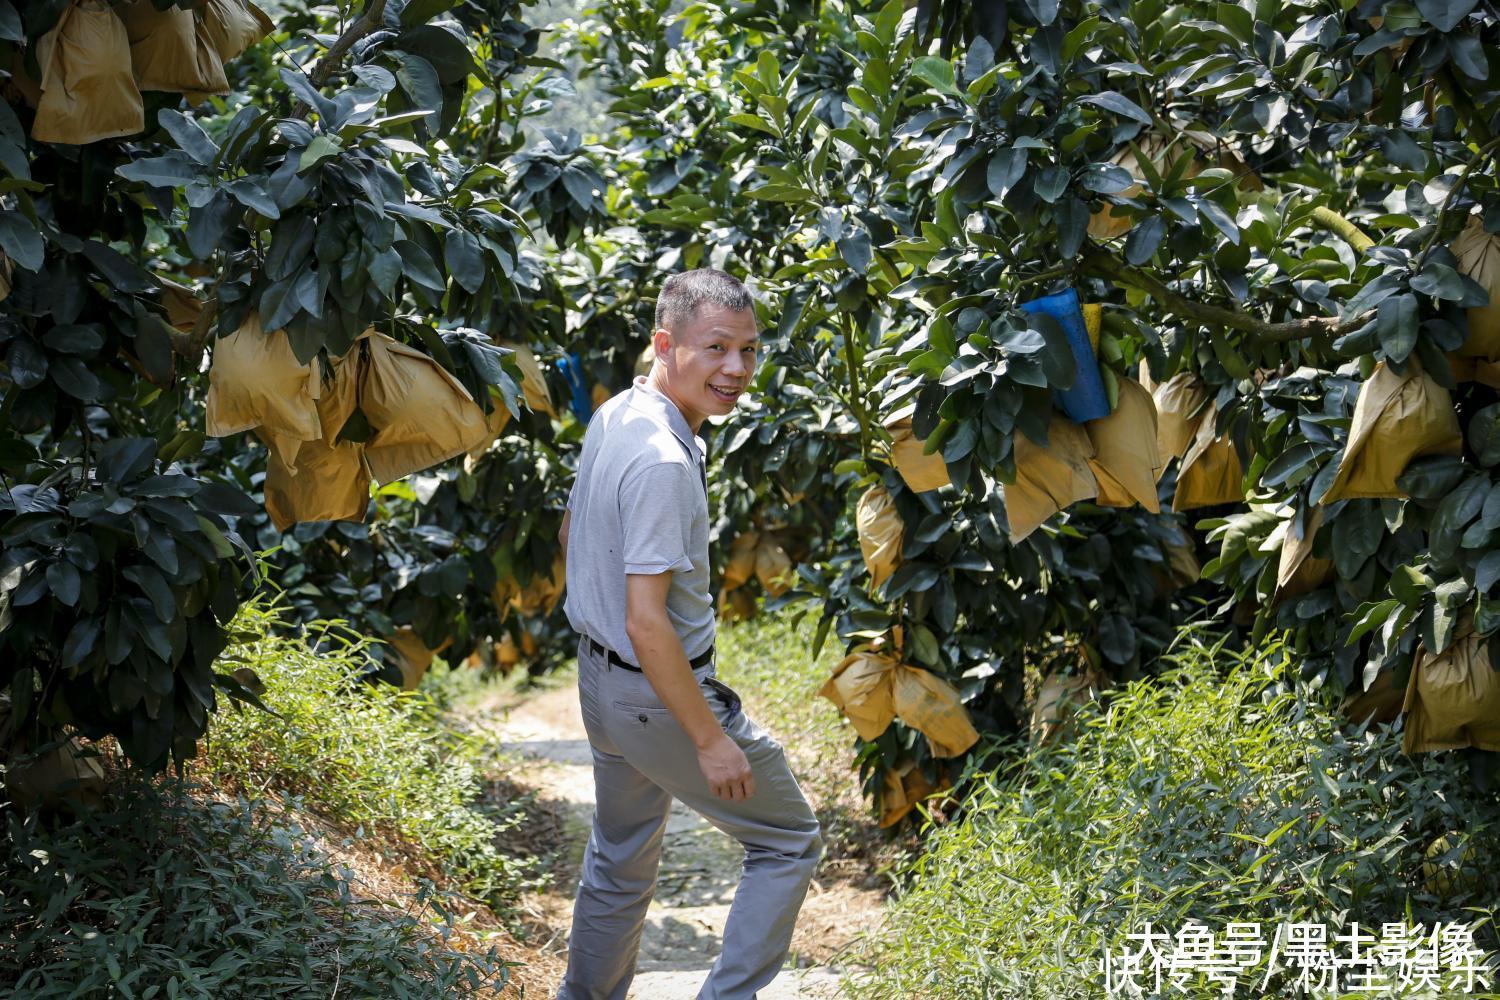 福建农村小伙把柚子卖到了国外, 一年卖出3亿